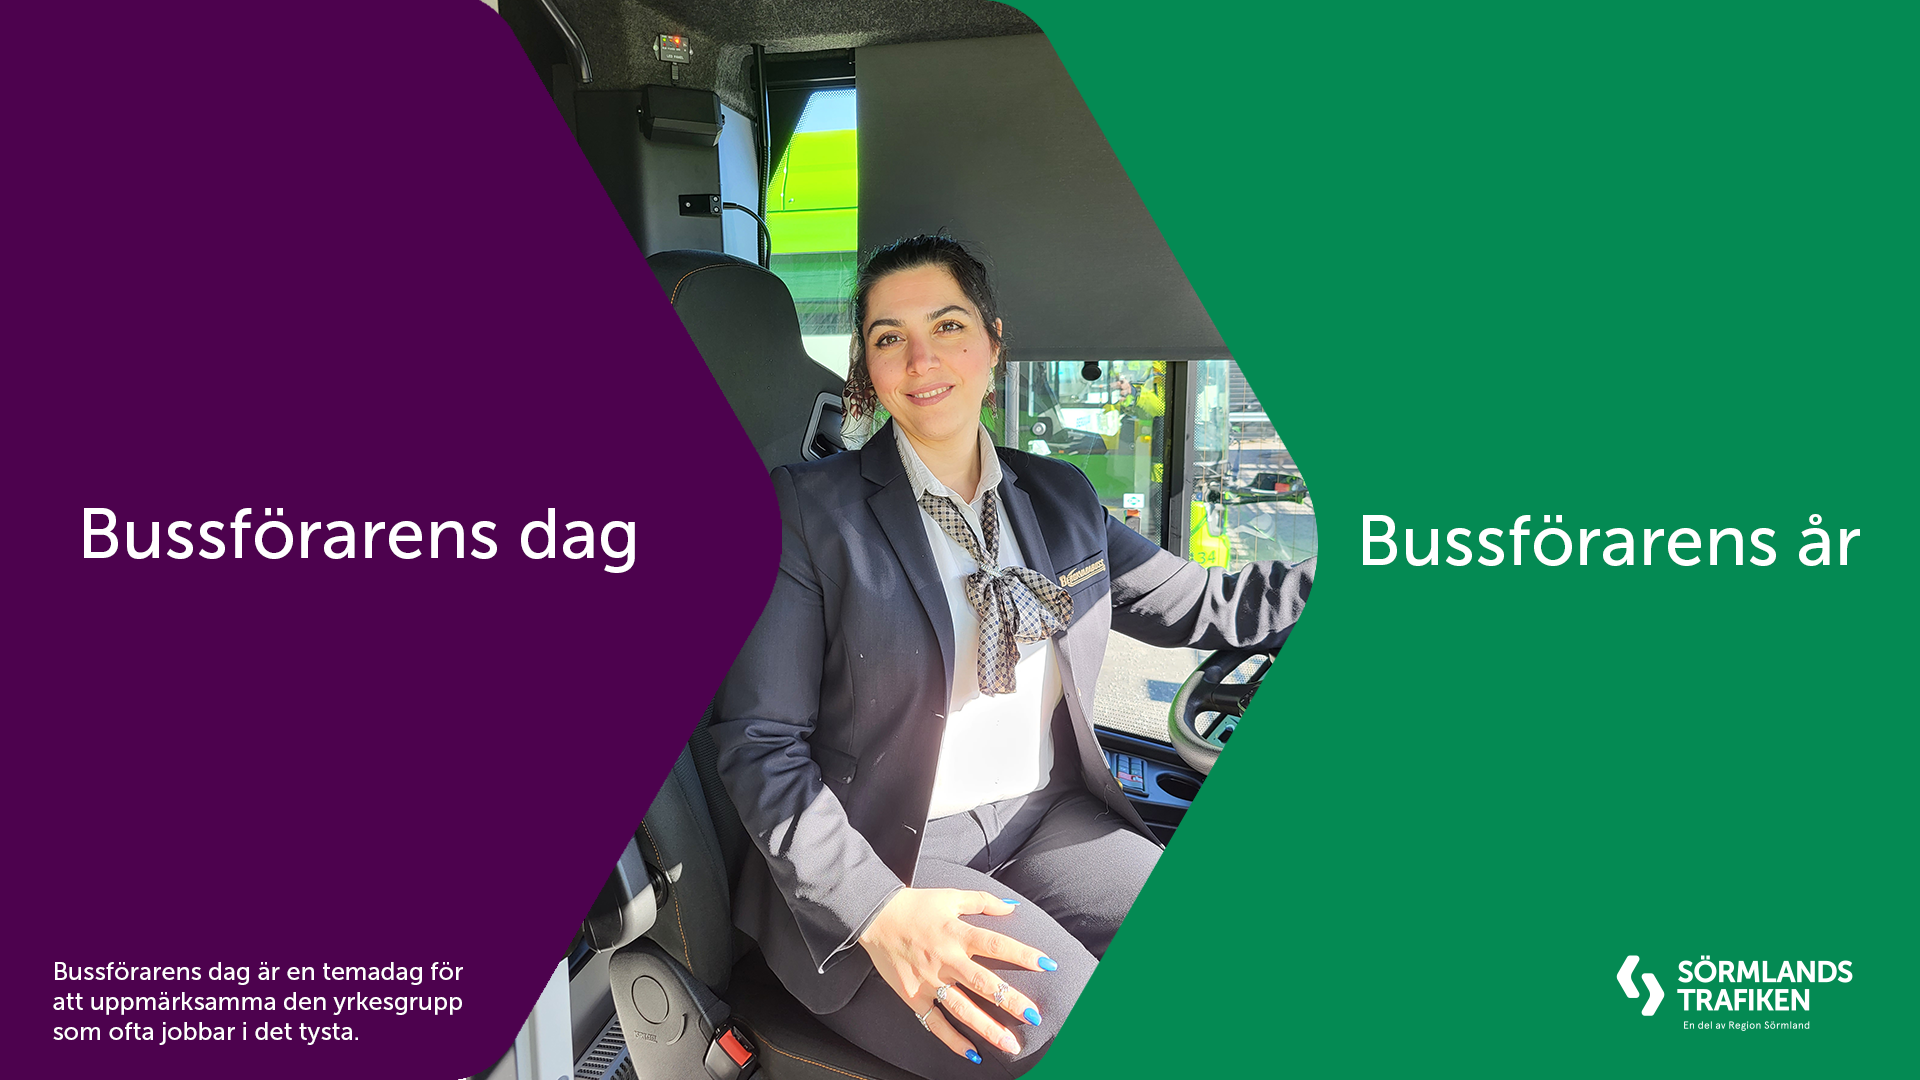 En bild på en kvinnlig bussförare på en av Sörmlandstrafikens bussar. Bilden innehåller också texten: "Bussförarens dag - bussförarens år". Samt: "Bussförarens dag är en temadag för att uppmärksammar en yrkesgrupp som jobbar i det tysta".  